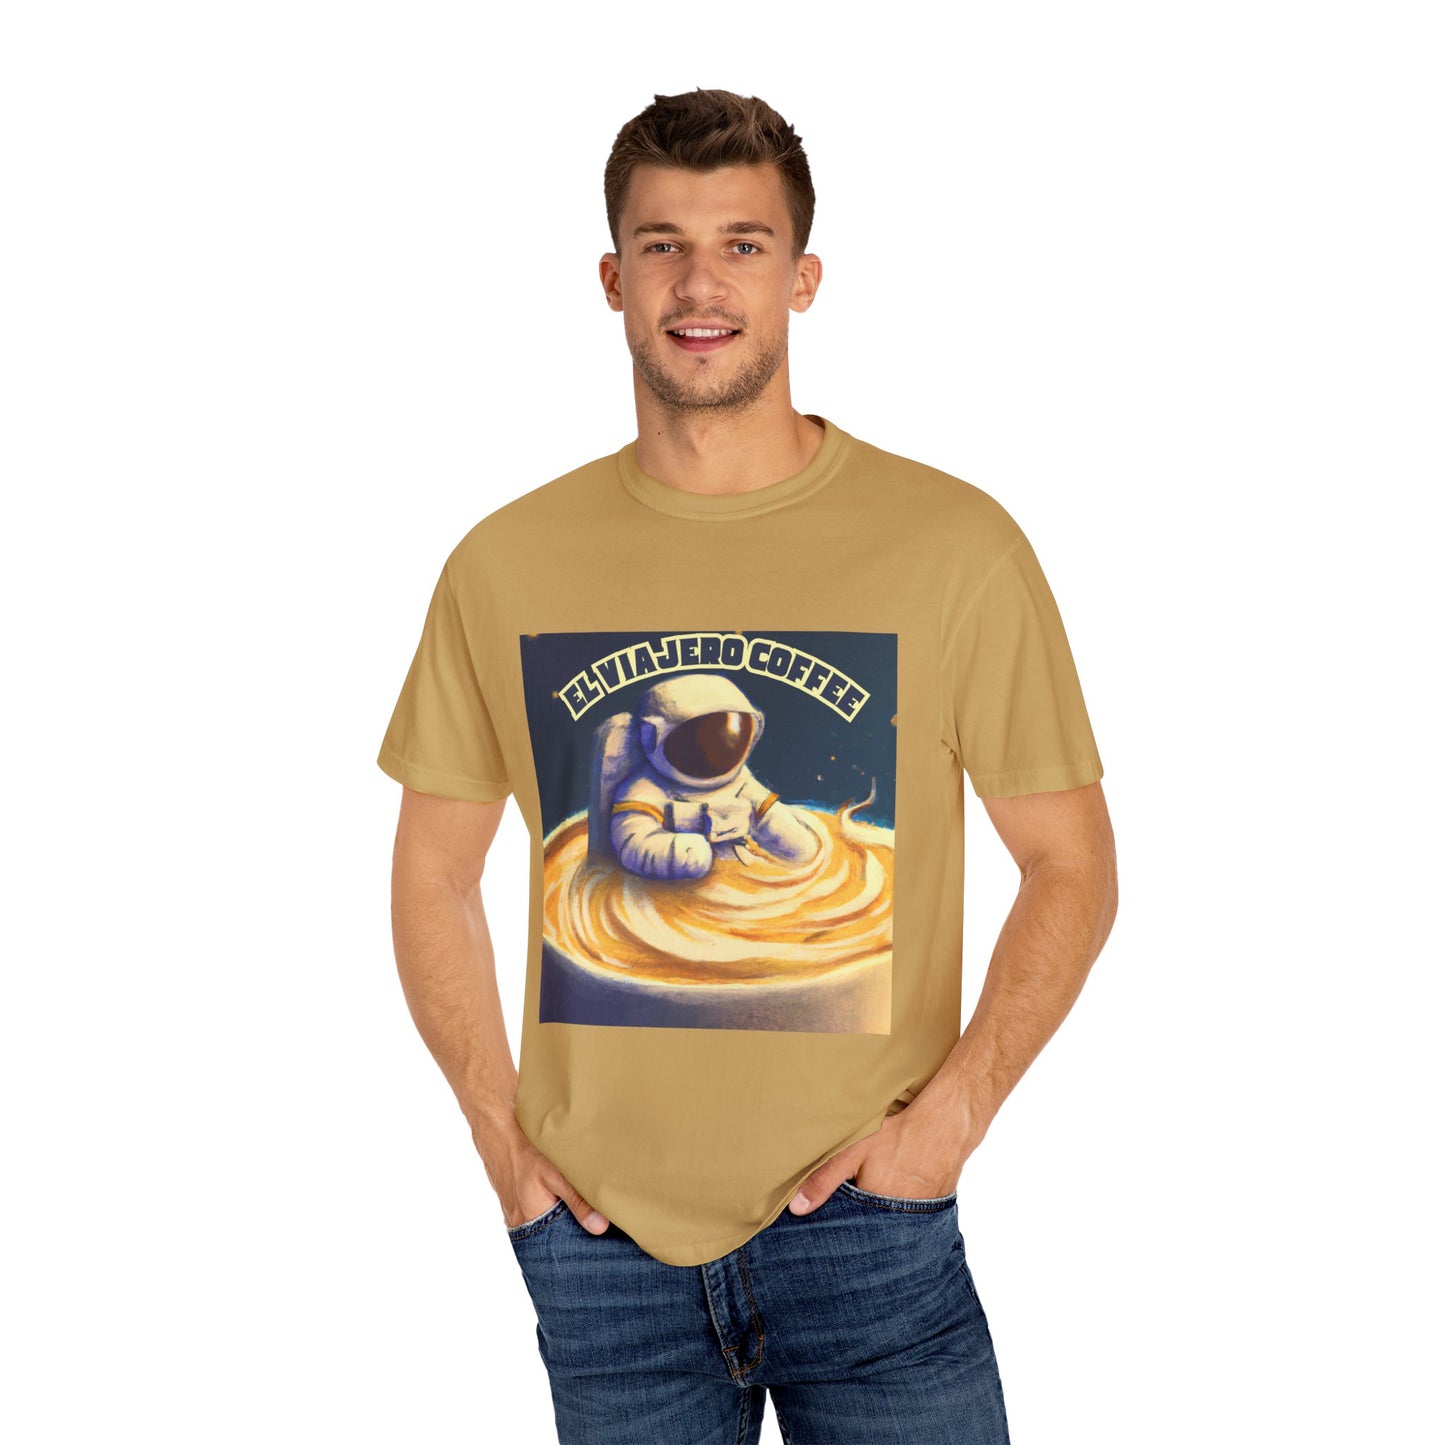 El Viajero Coffee - Cappuccino Astronaut